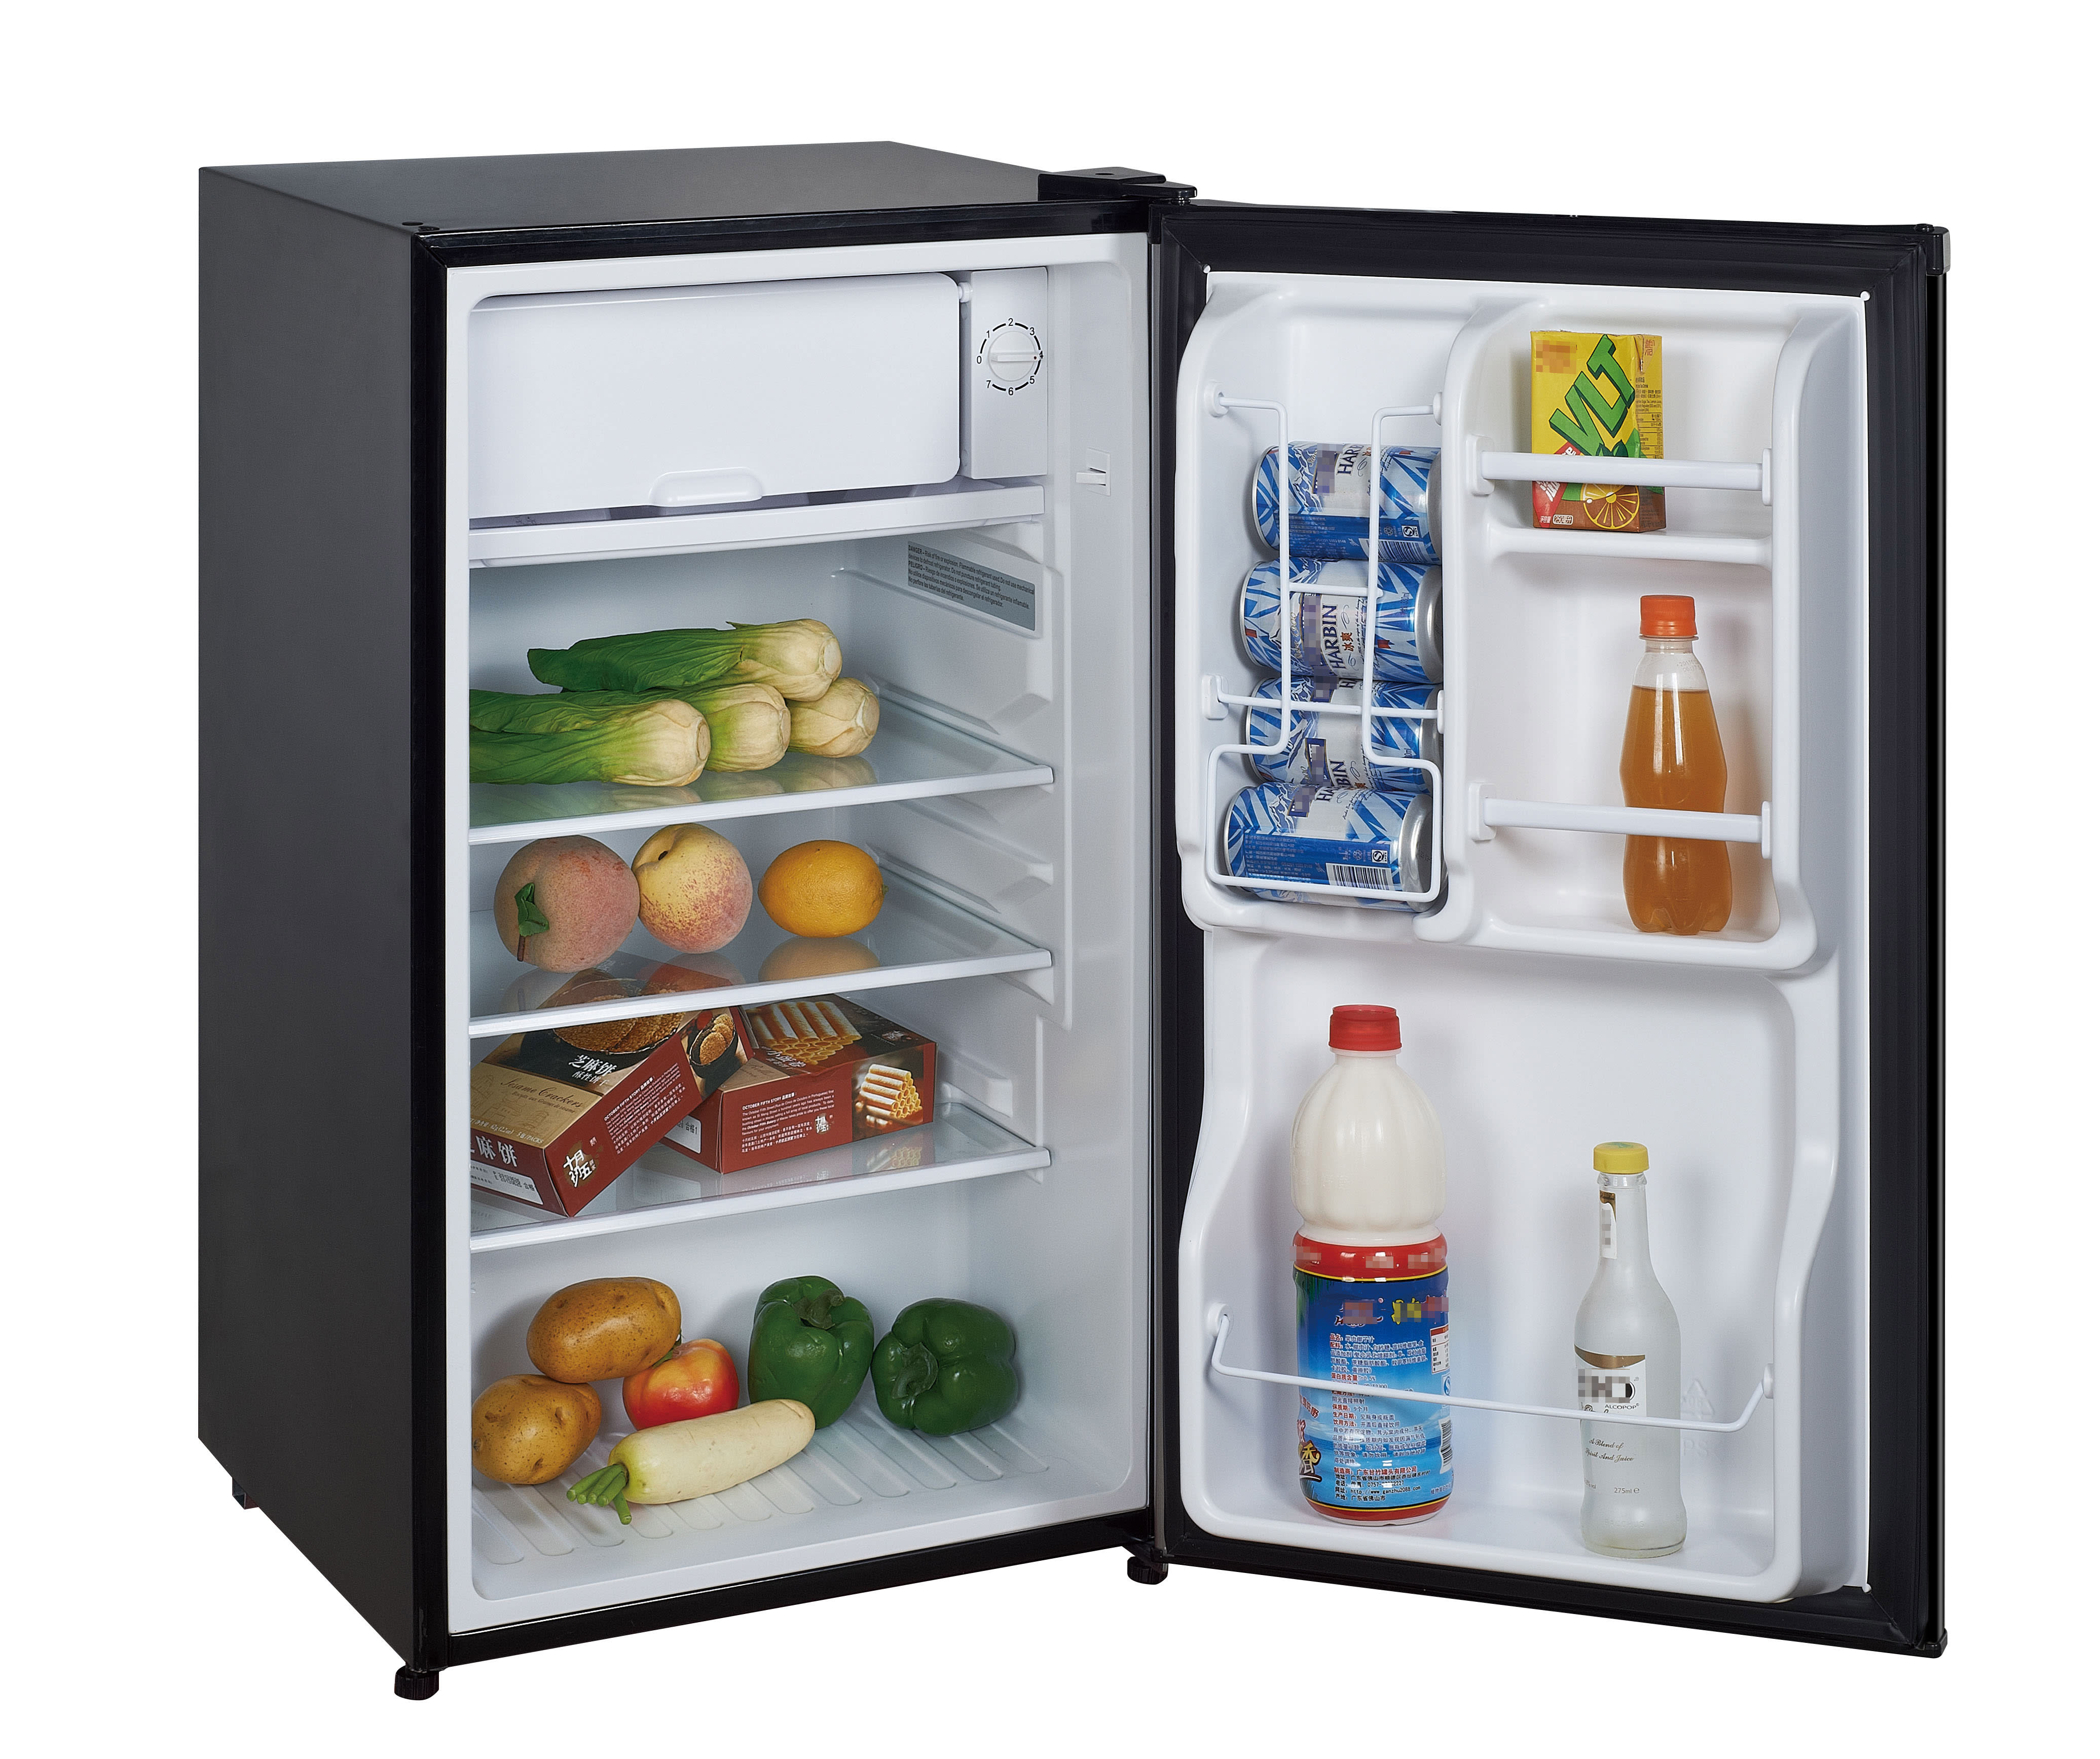 Холодильник купить недорогой и надежный. Mini Fridge холодильник. Мини холодильник Mini Fridge. Минихолодильник Fridge-5. Ebr800858 03 холодильник.